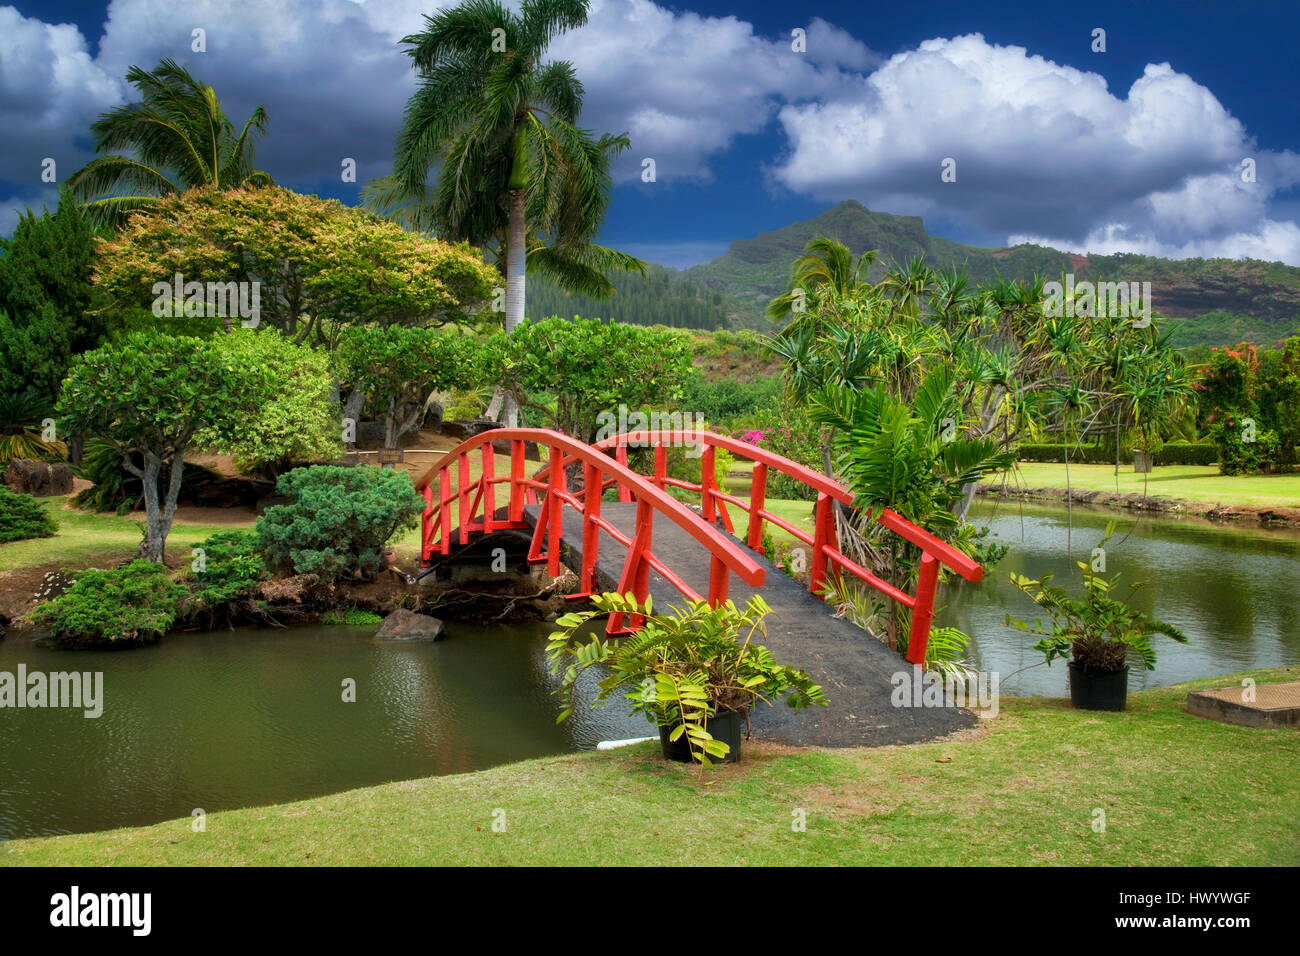 Pont pour les jardins japonais. Smith's jardins tropicaux. Kauai, Hawaii. Banque D'Images